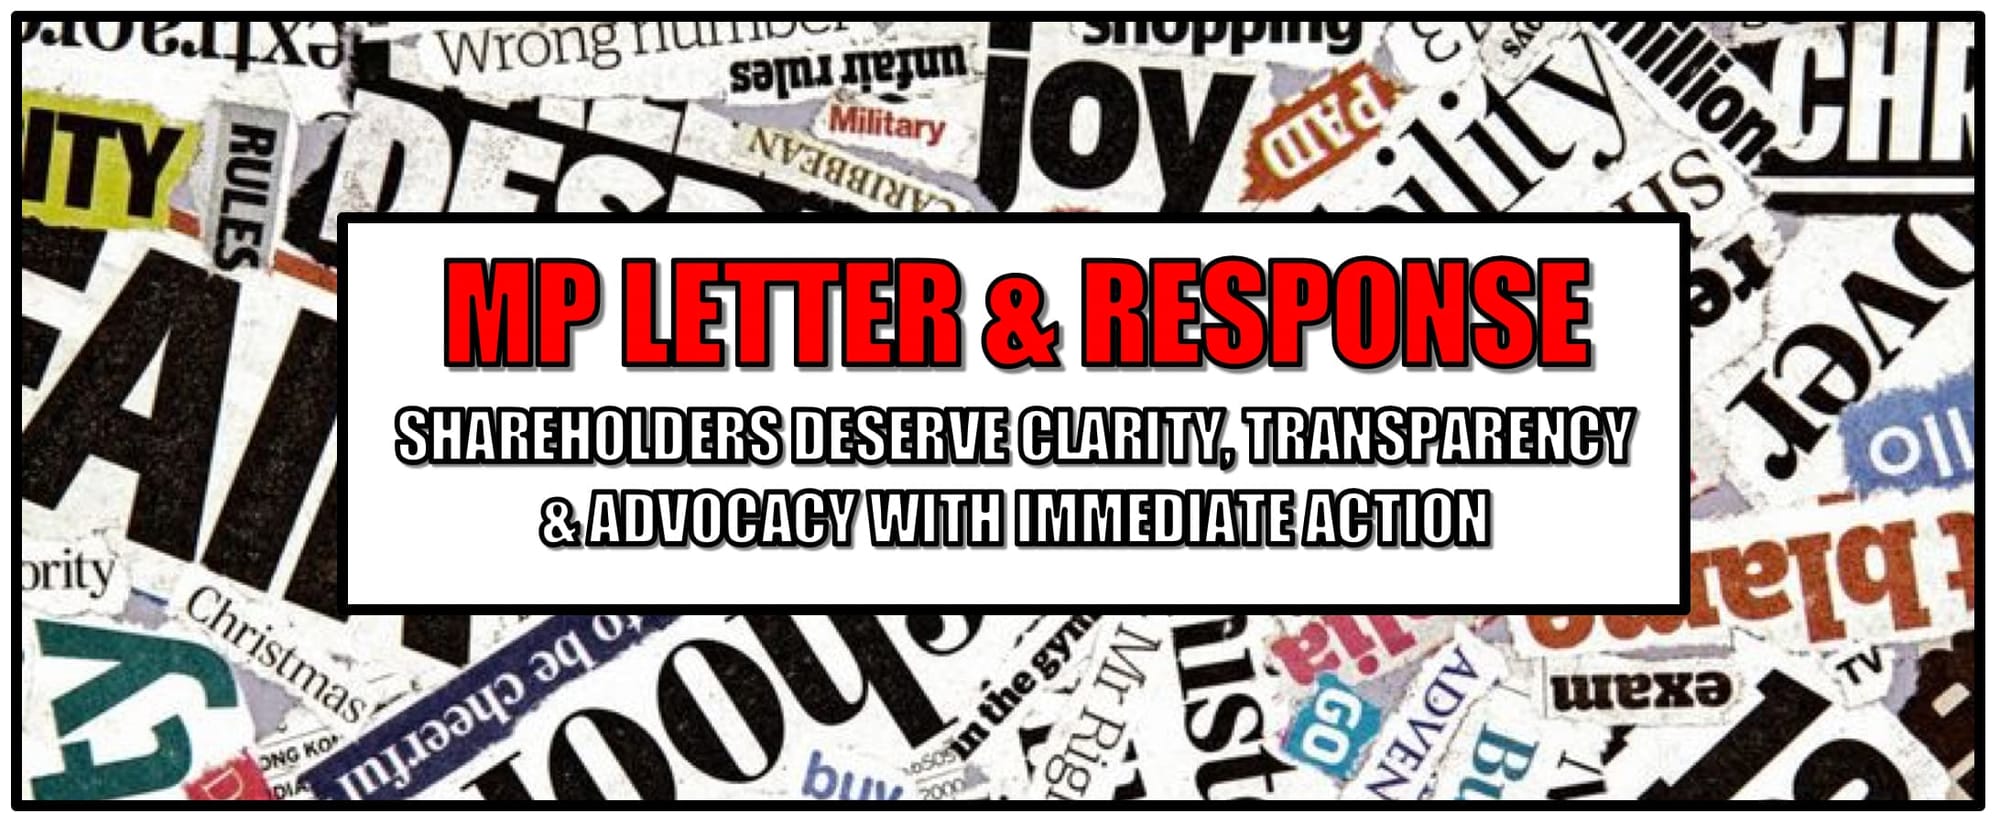 HEADER: MP LETTER & RESPONSE